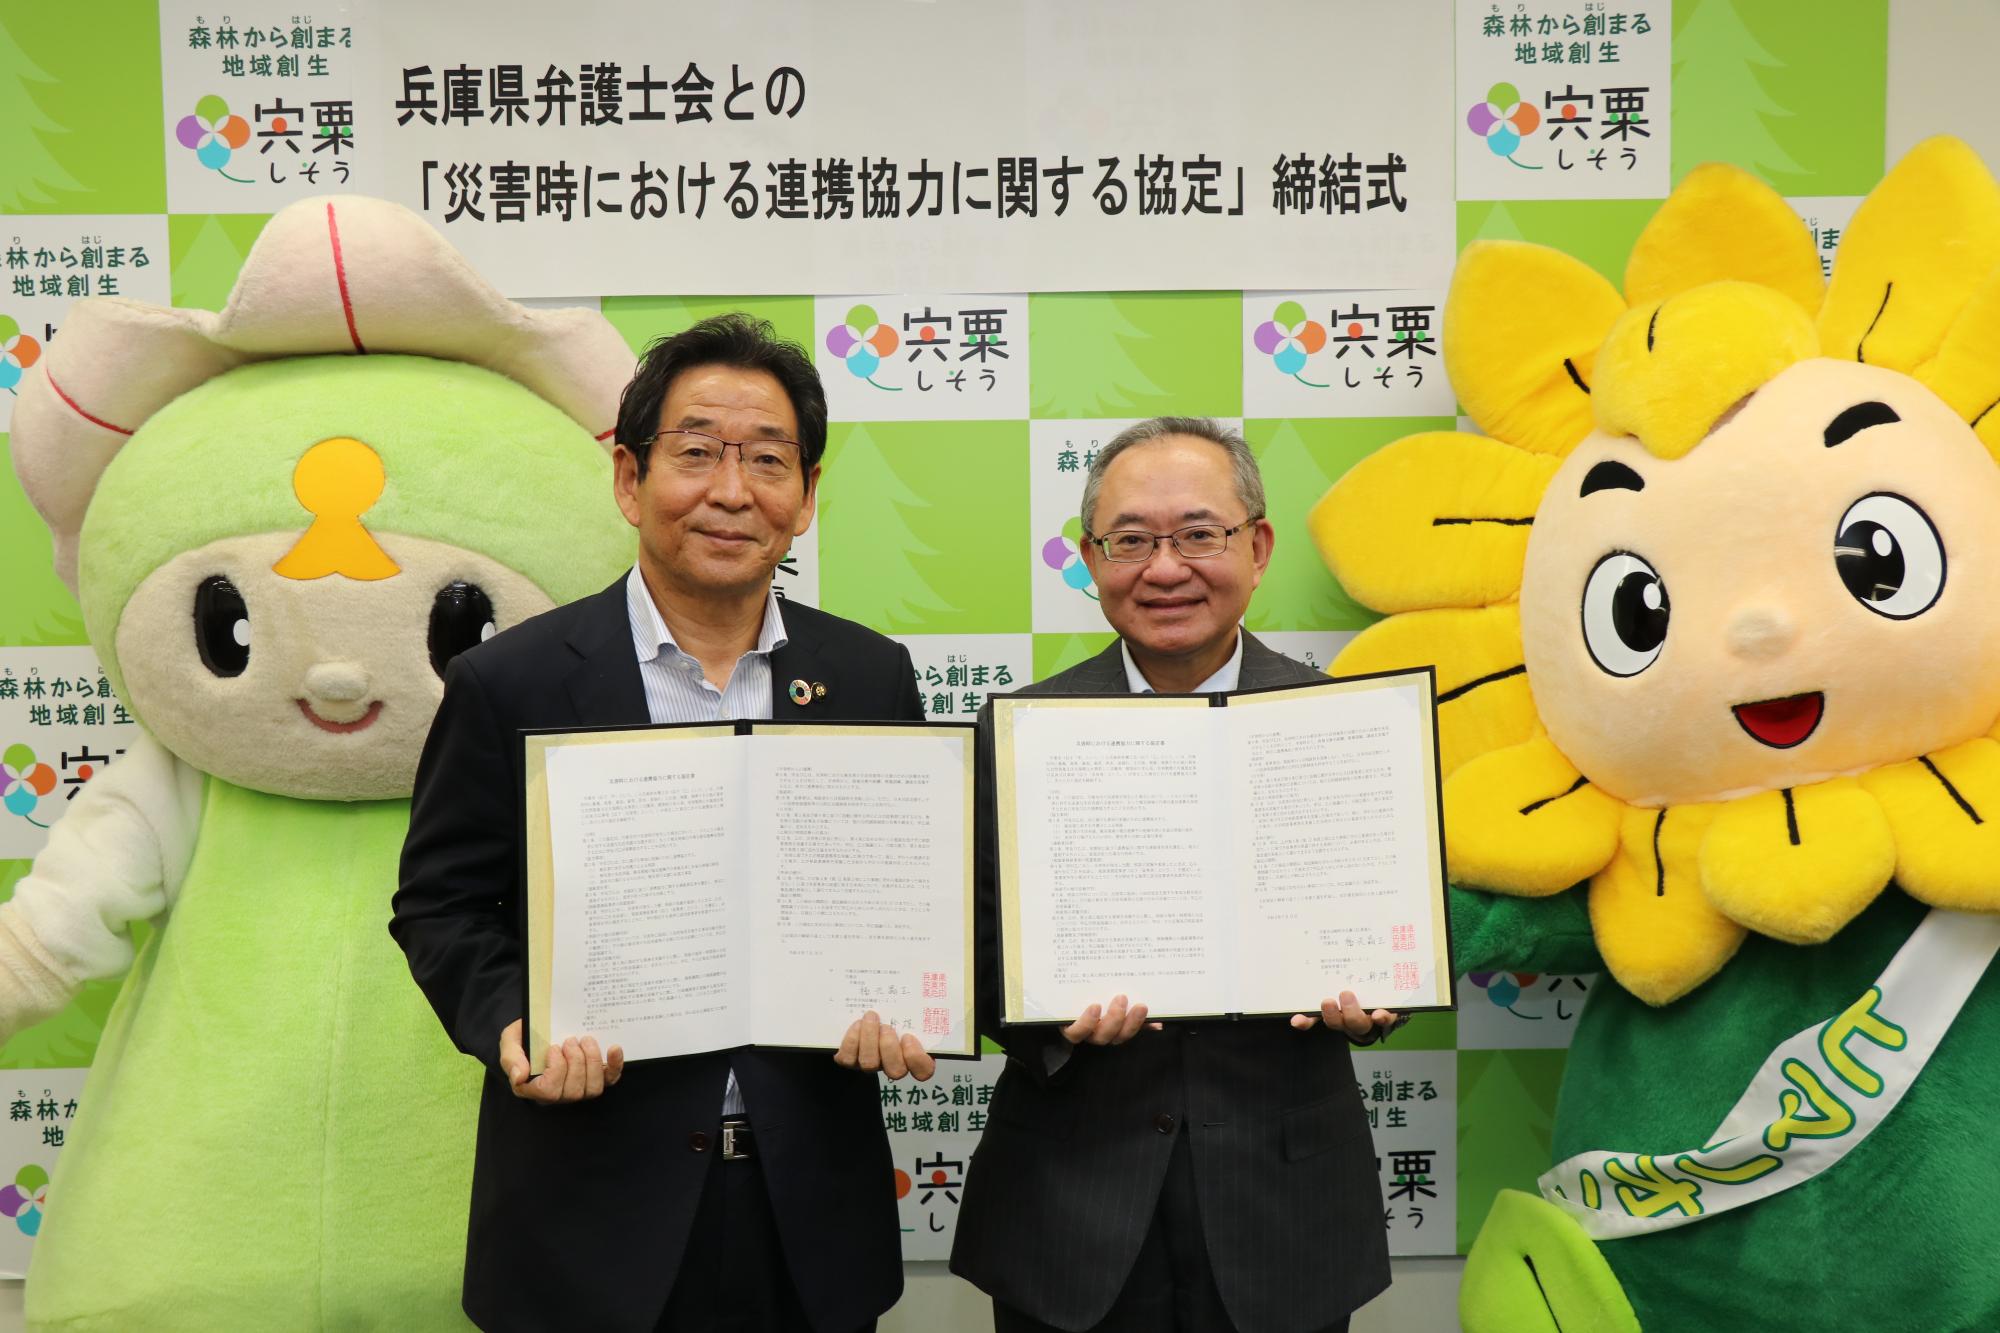 右、兵庫県弁護士会様と左、福元市長が協定書を手に並んでいる写真